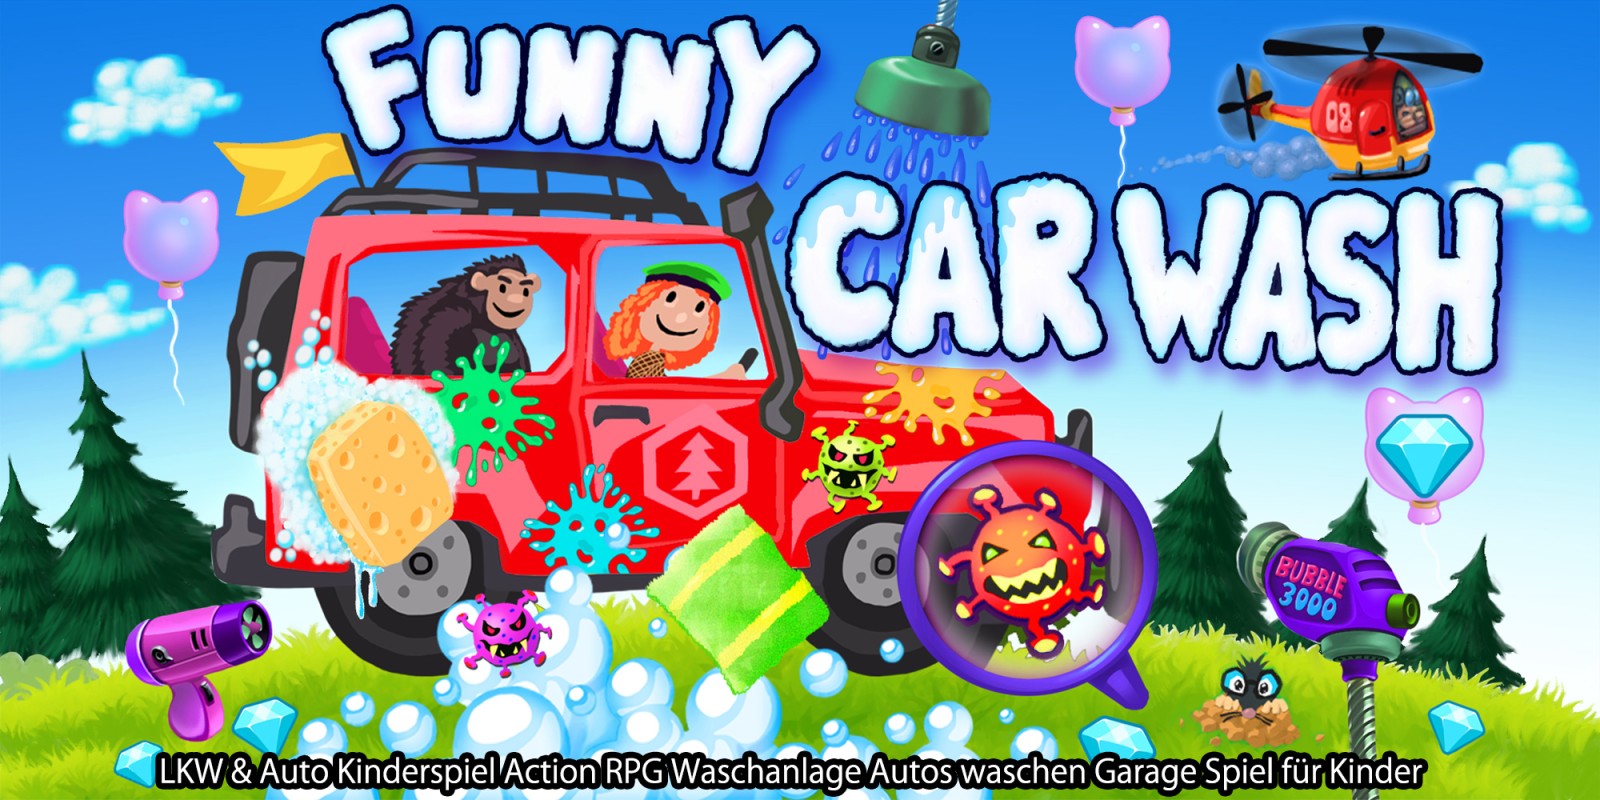 Funny Car Wash - LKW & Auto Kinderspiel Action RPG Waschanlage Autos waschen Garage Spiel für Kinder